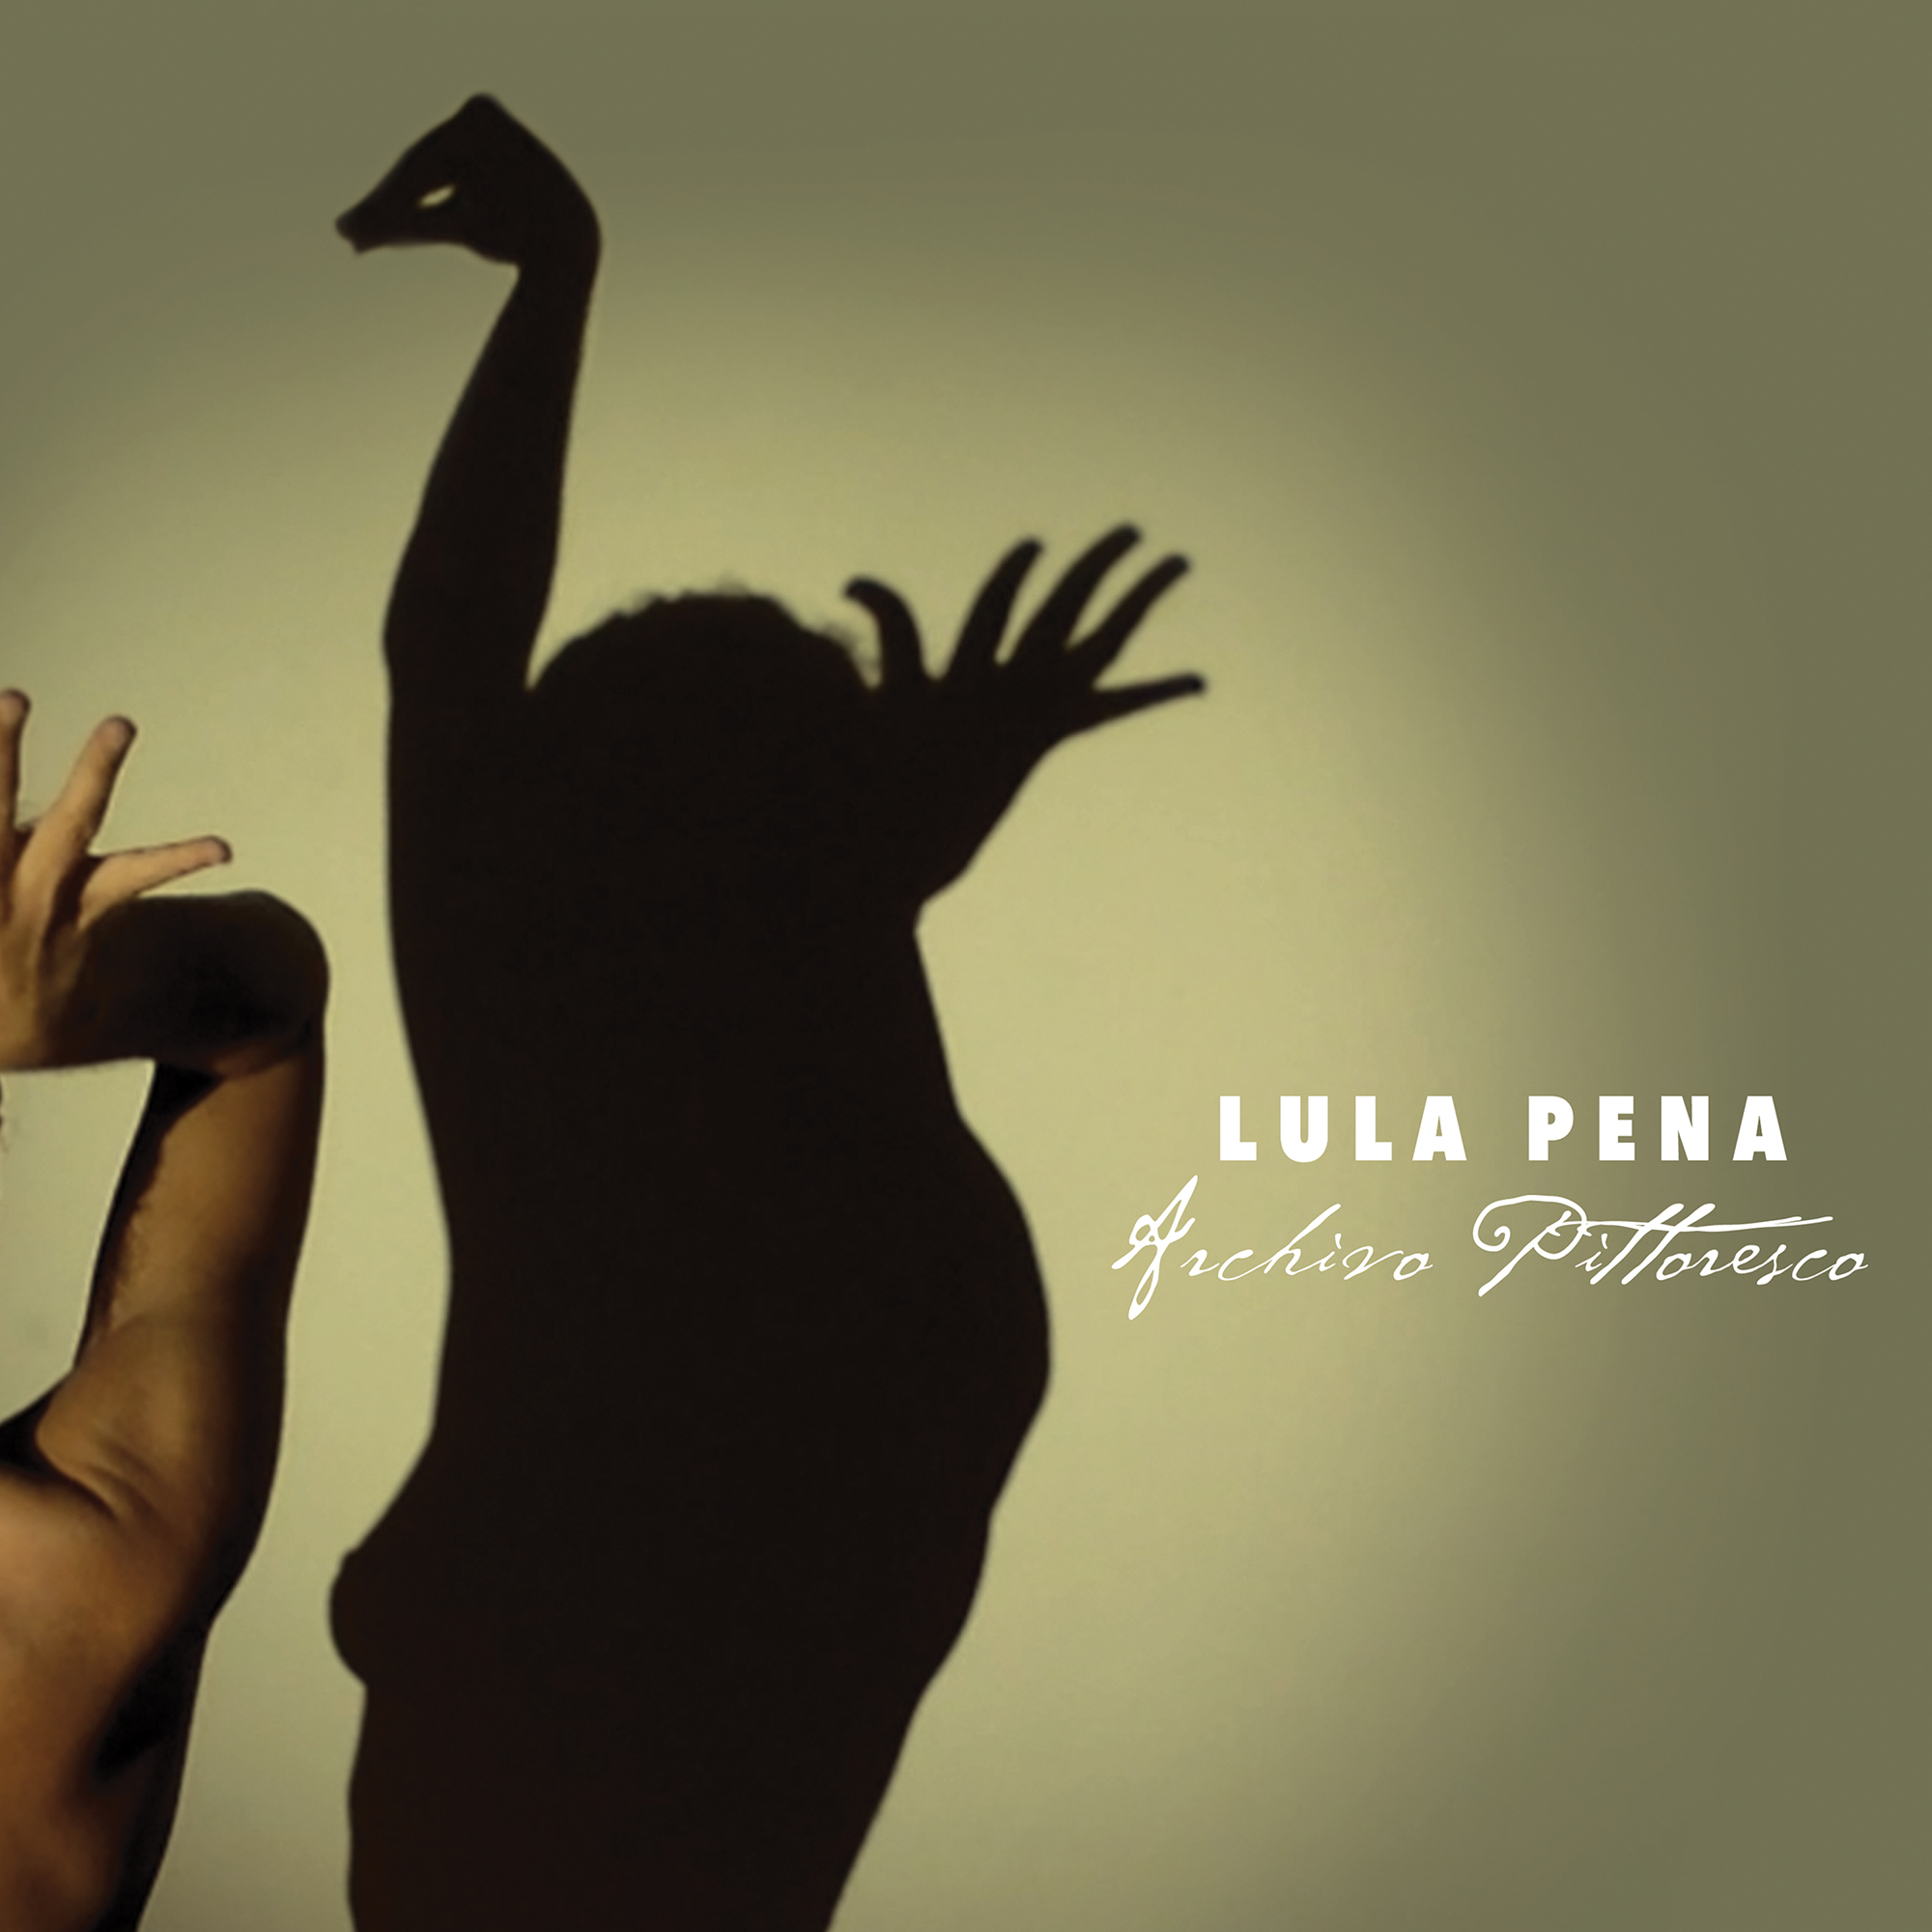 I migliori dischi world del 2017 - Lula Pena